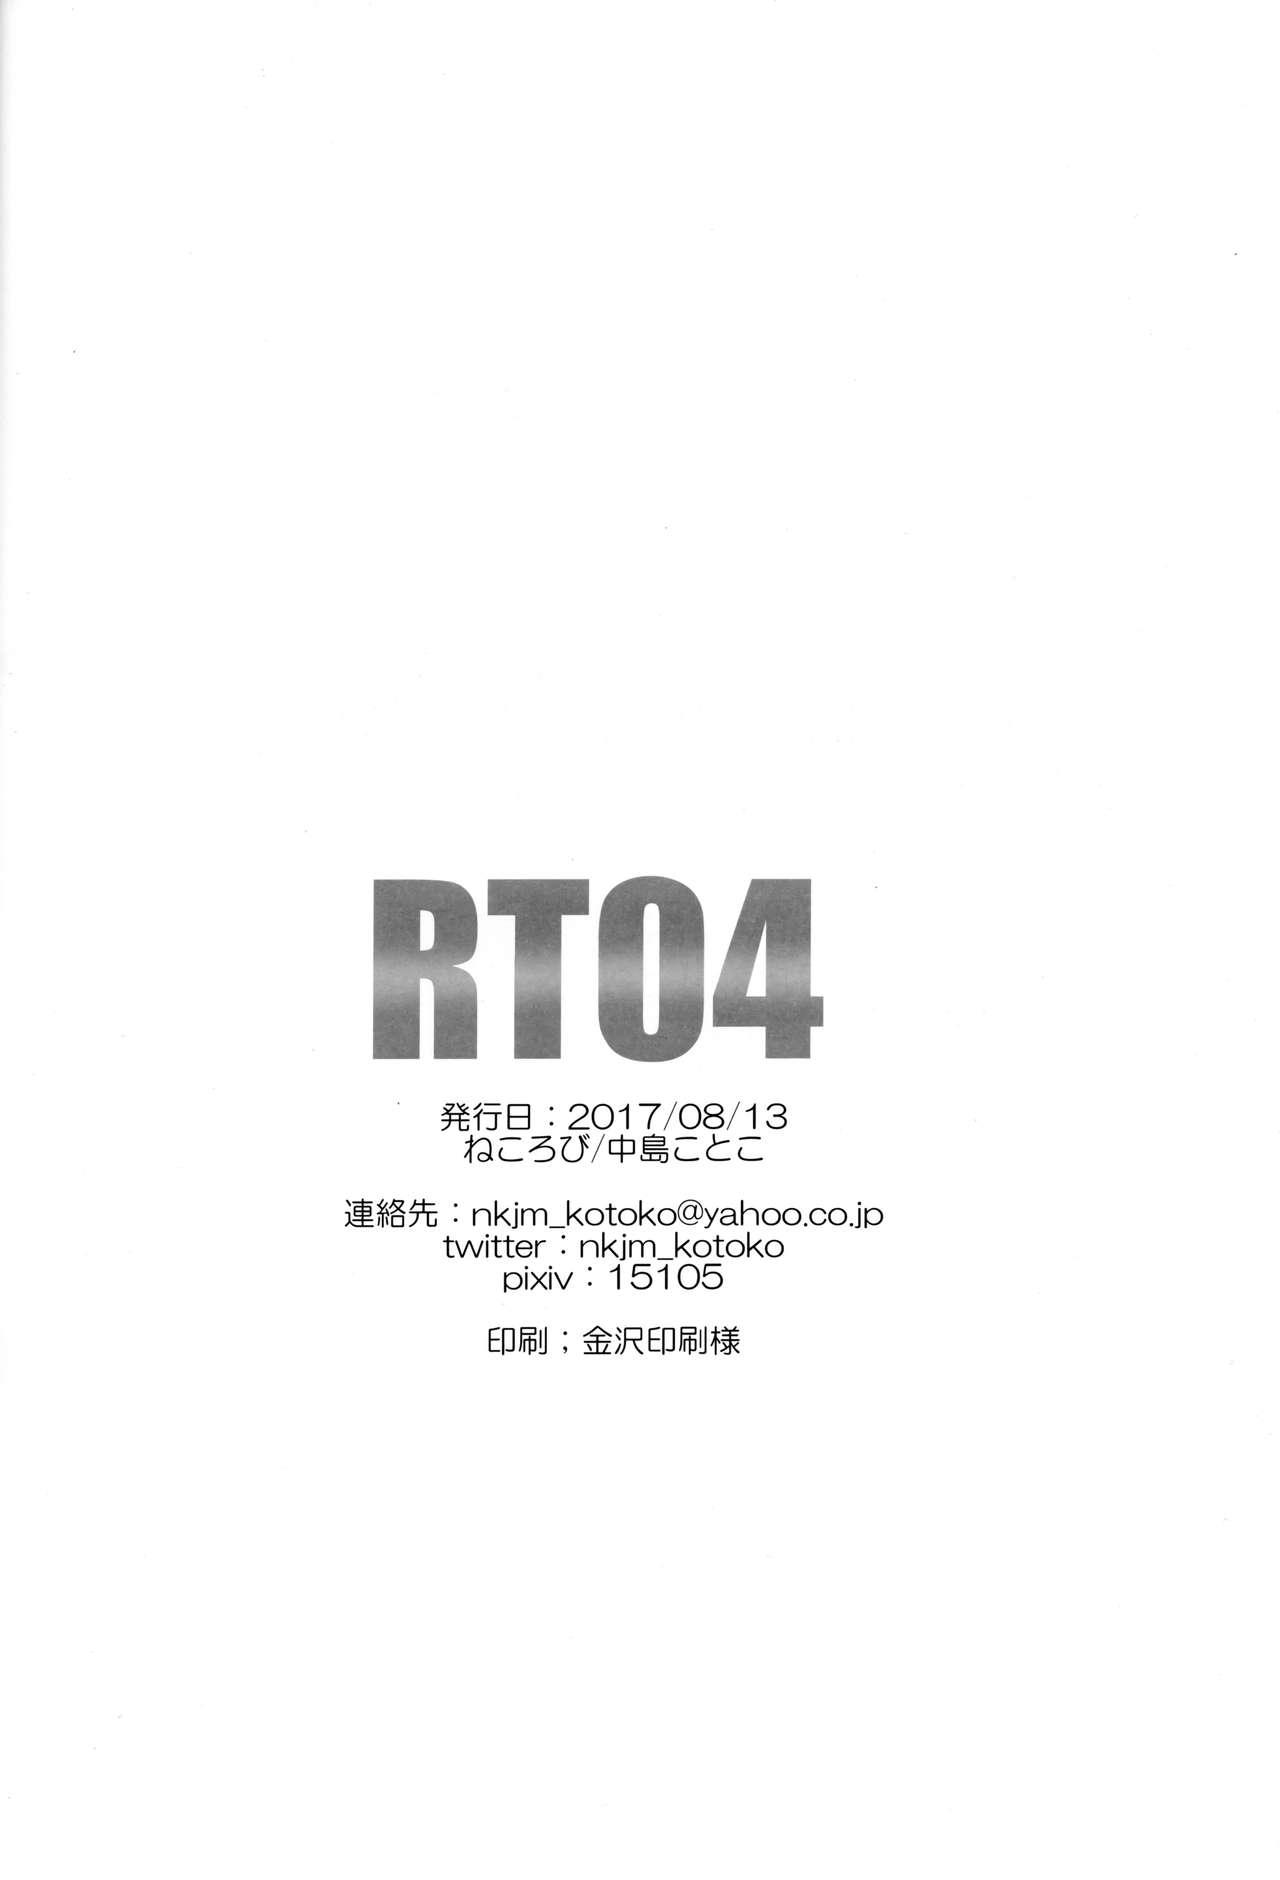 RT04 24